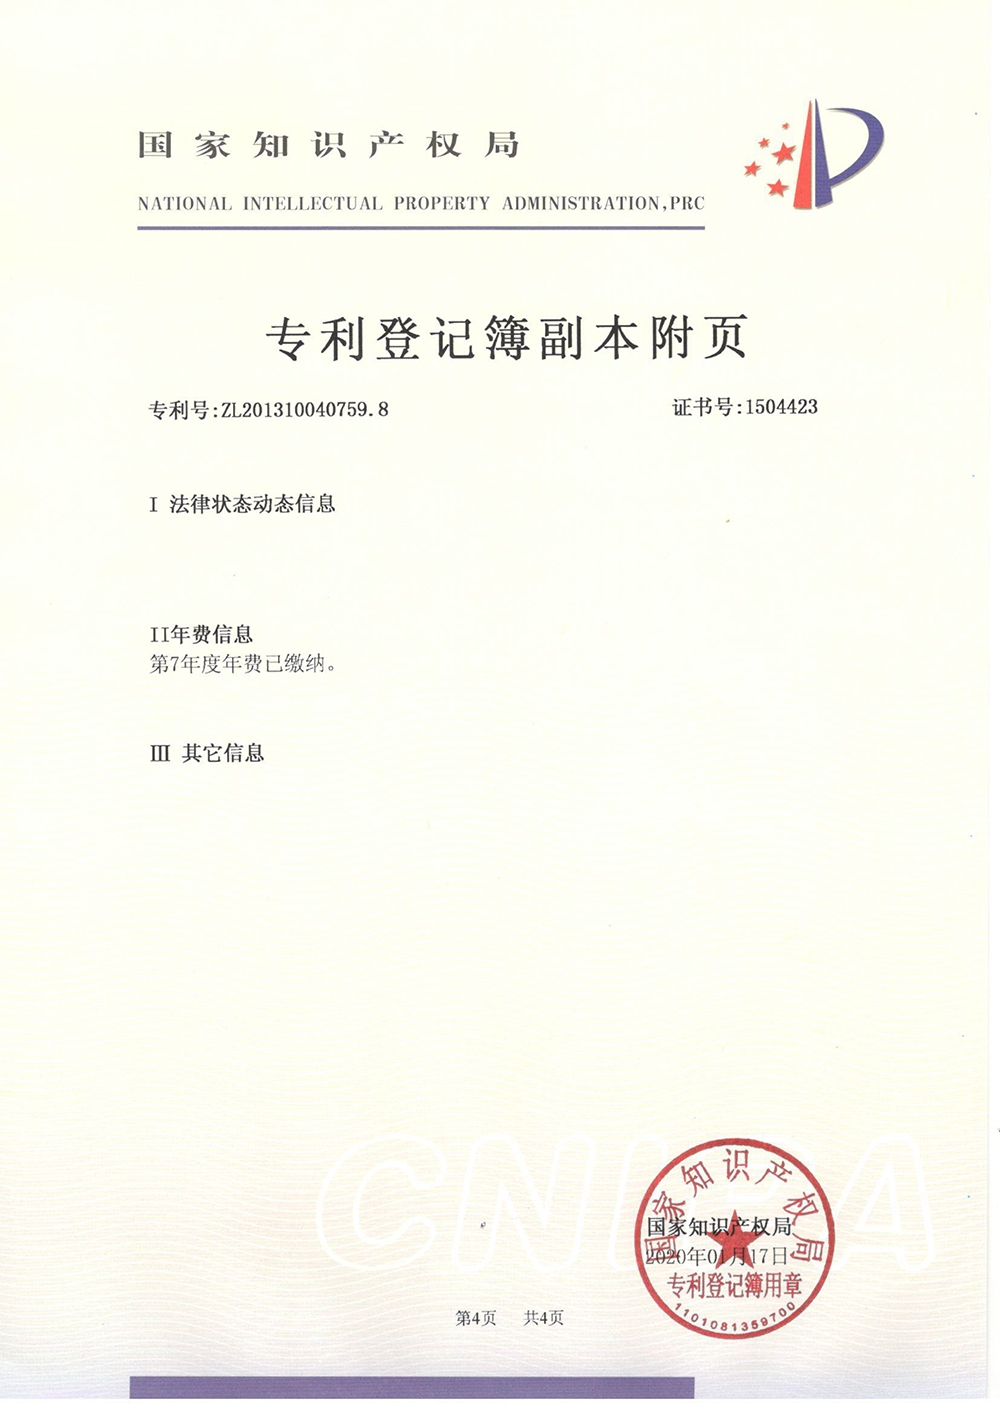 2-乙基-4-甲基咪唑的方法-专利登记簿-4_上海浩登材料股份有限公司